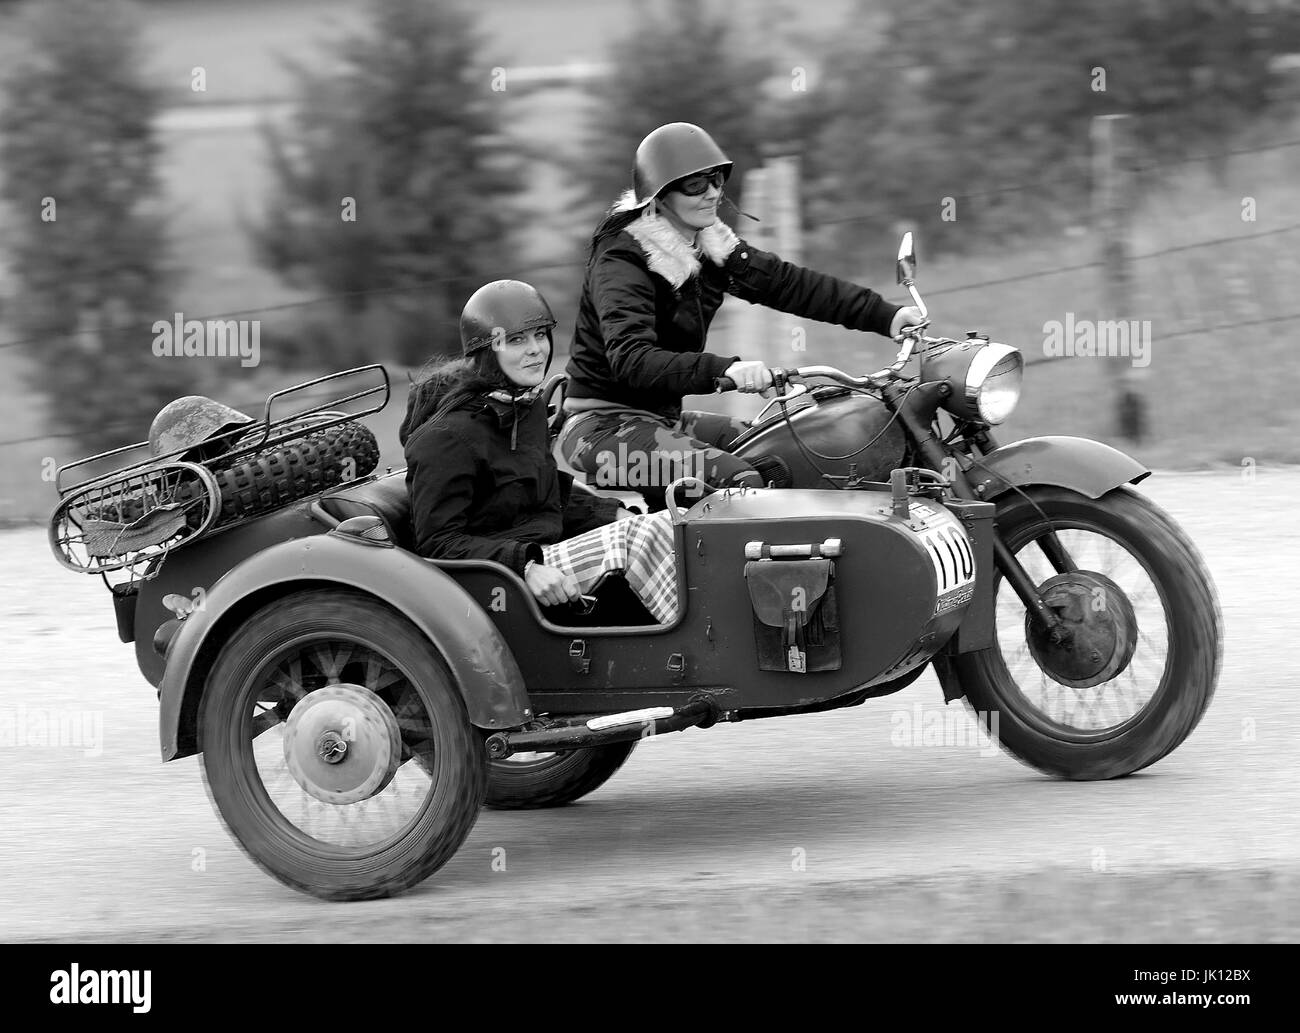 Dnepr 750 motos de l'autre voiture. Pas de rejet, Dnepr 750 Motorrad mit Beiwagen. Kein Presse Banque D'Images